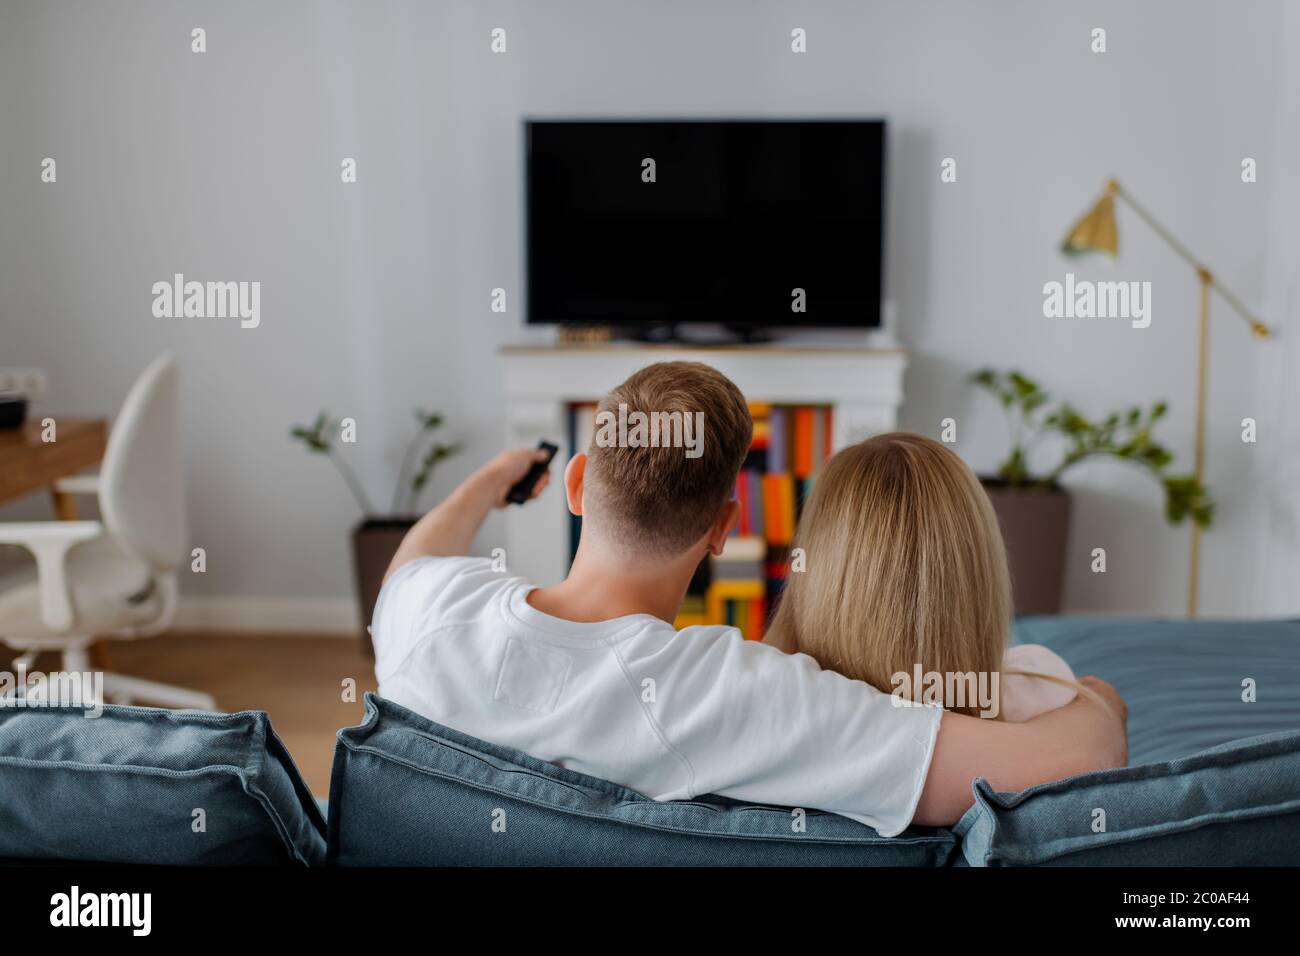 vue arrière de l'homme et de la femme assis près d'un téléviseur à écran plat avec écran vierge Banque D'Images